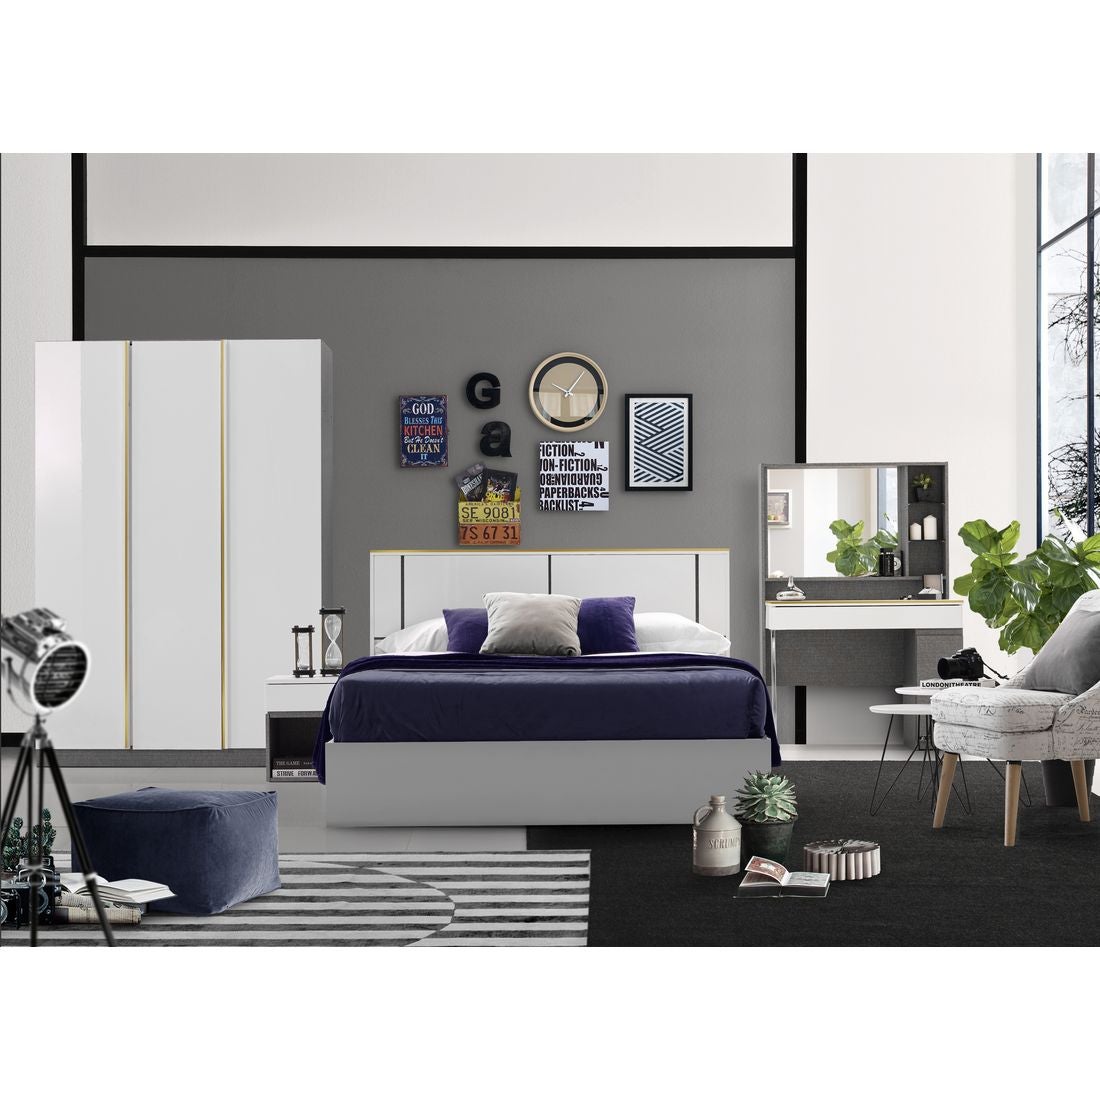 59022009-element-furniture-bedroom-furniture-bedroom-sets-31